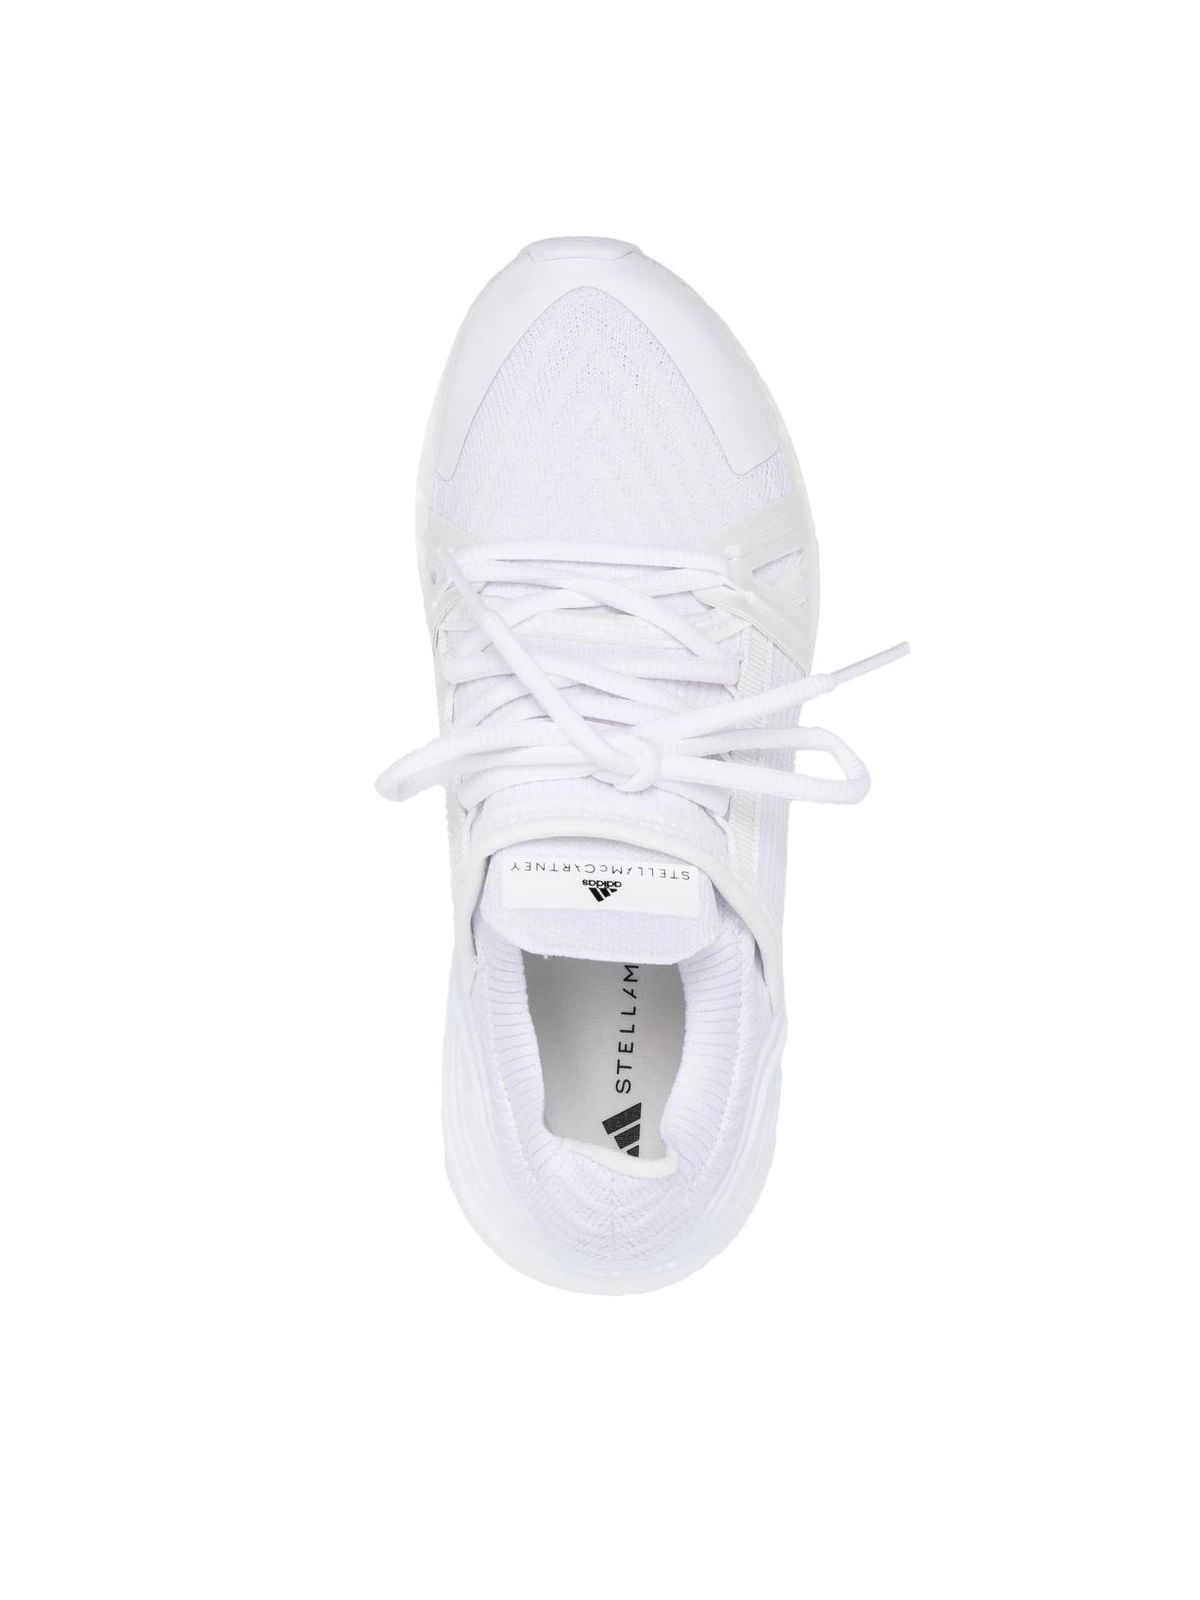 Shop Adidas By Stella Mccartney Women's Sneaker: Asmc Ultraboost 20